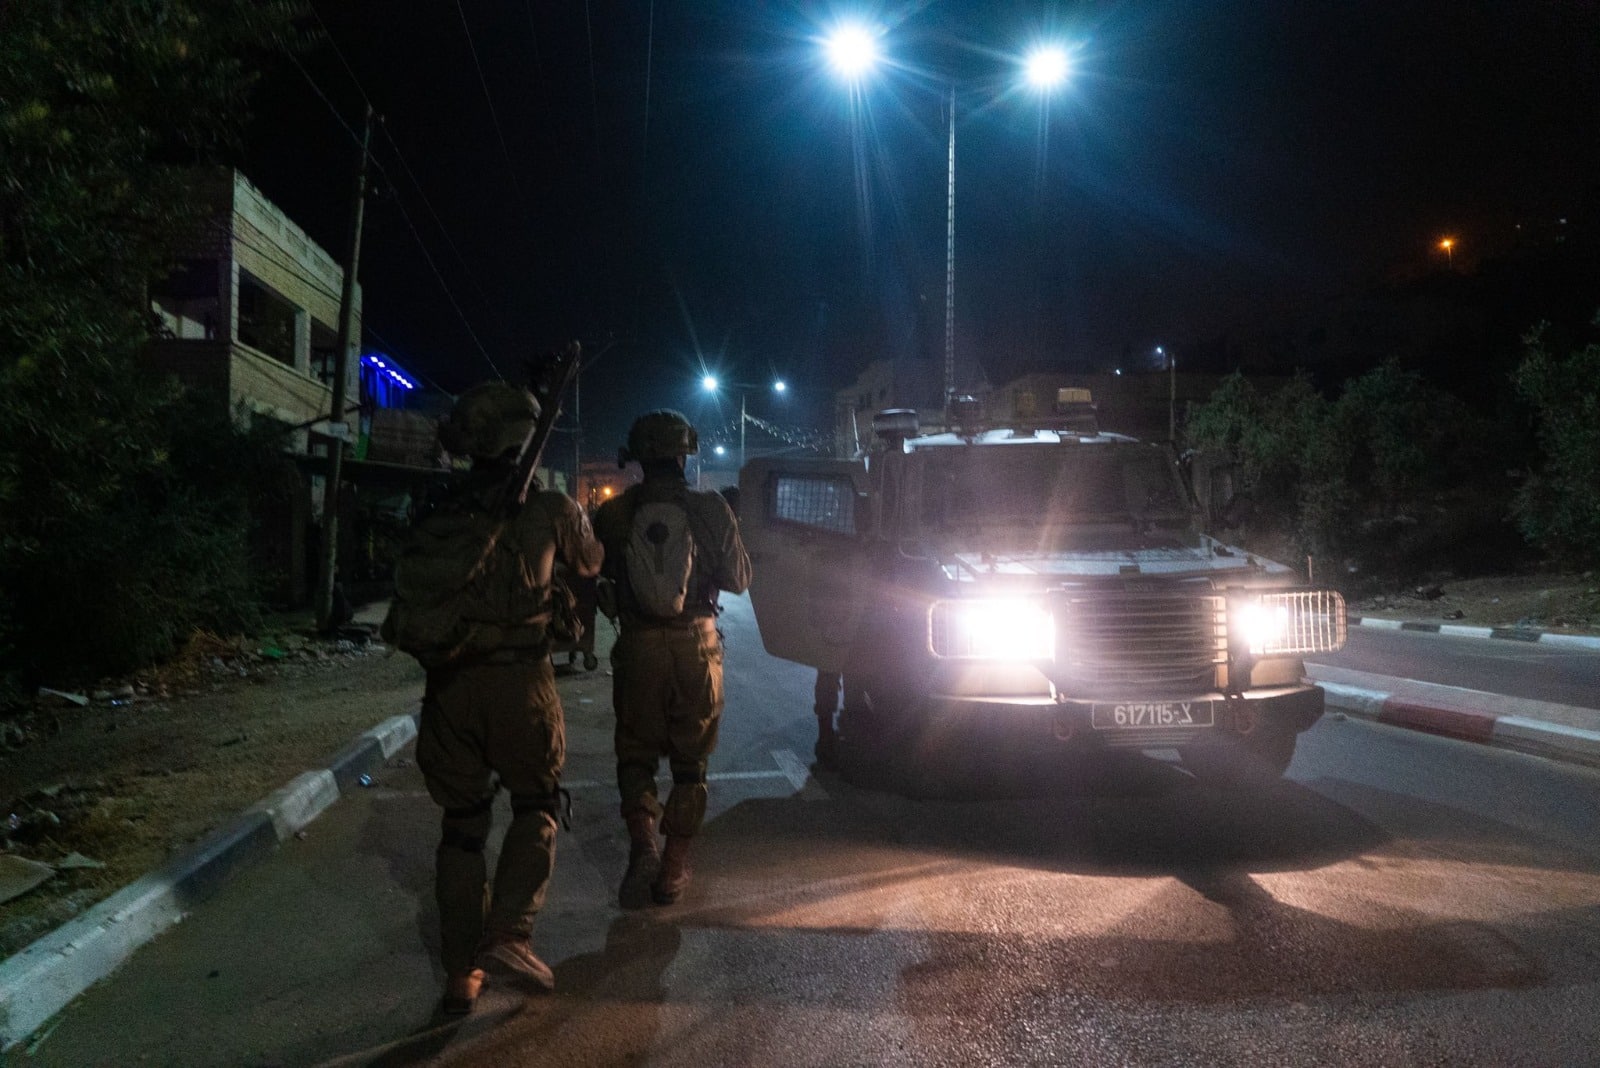 כוחות הביטחון עצרו הלילה 12 מבוקשים ברחבי יו"ש